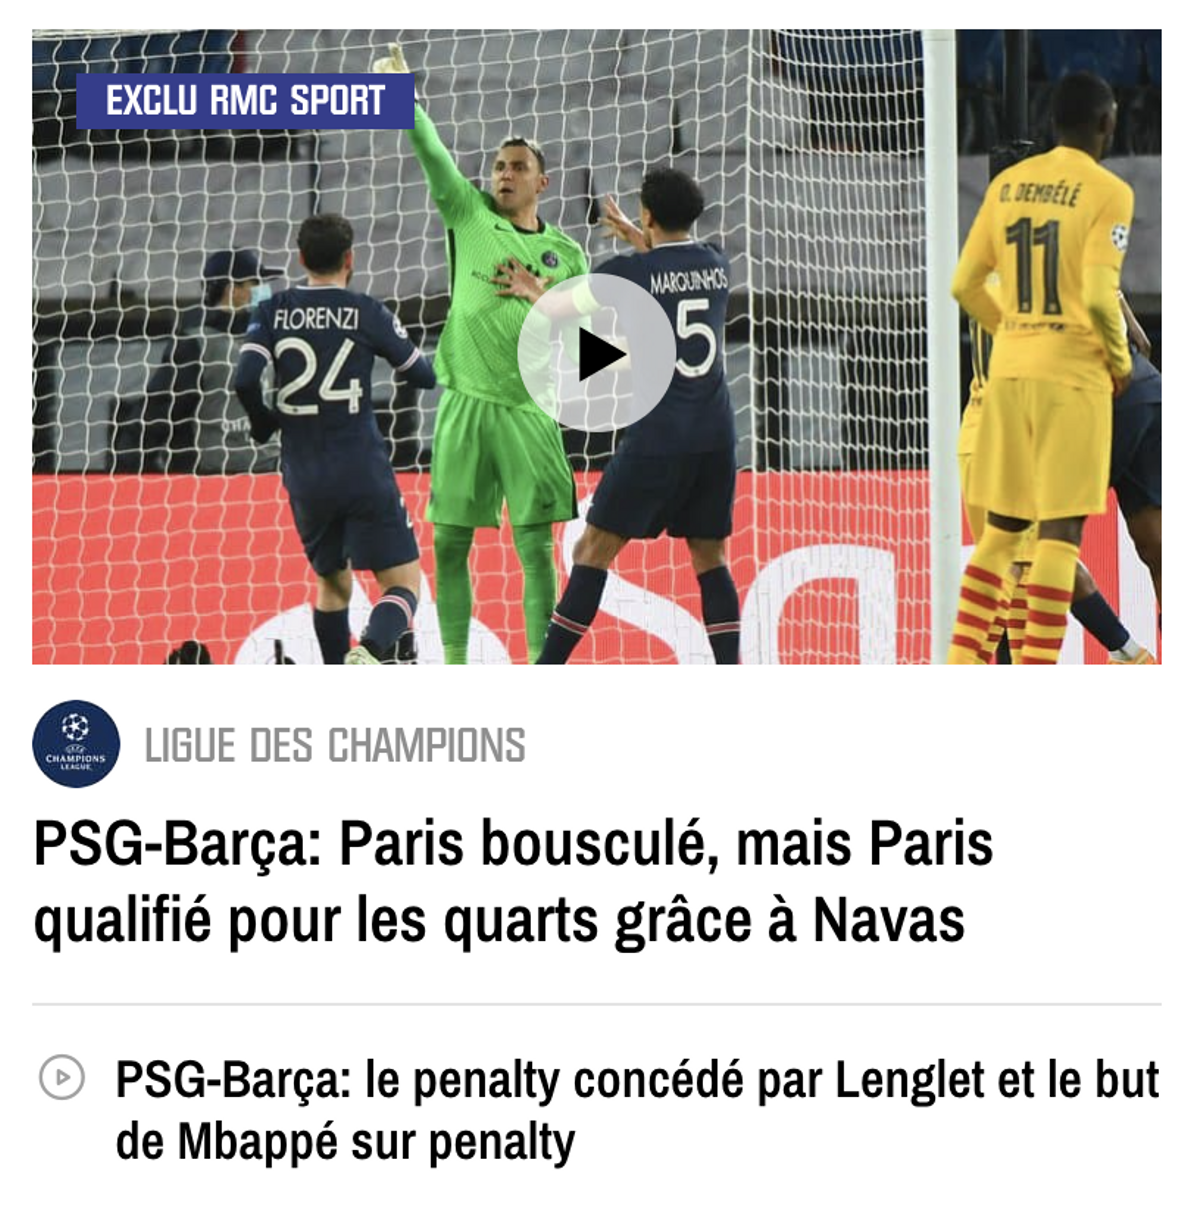 El titular de hoy en el portal web RMC Sport francés.